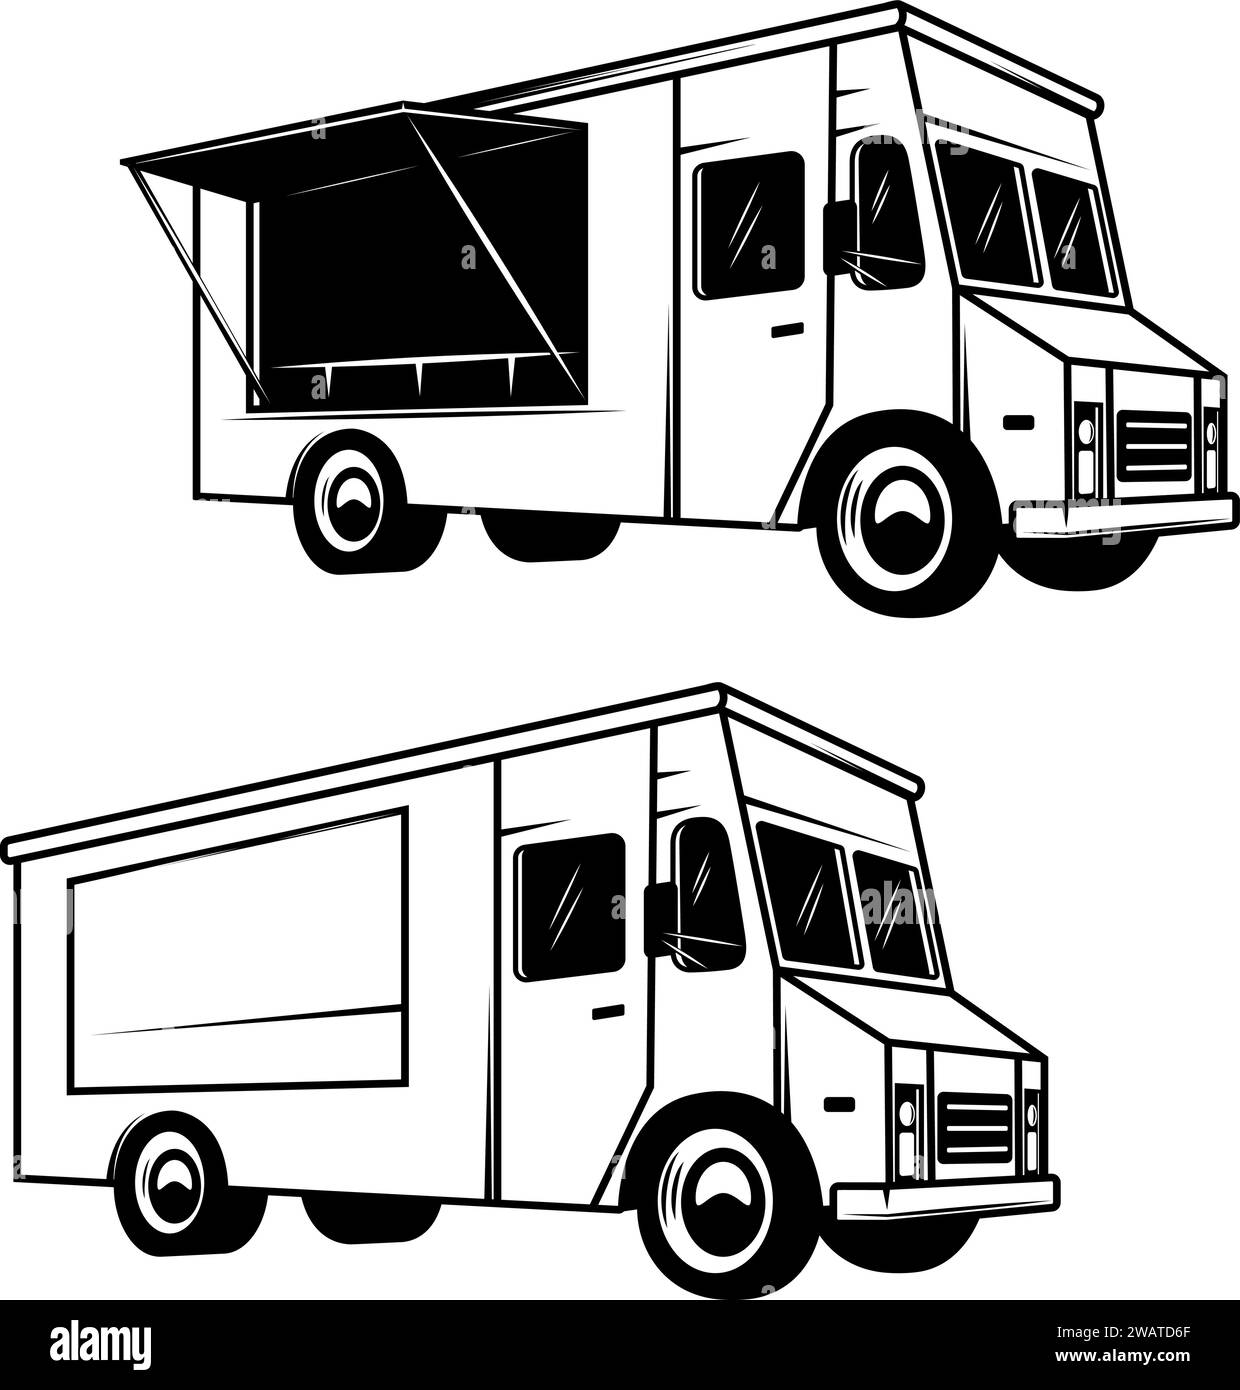 Illustration of an food truck. Design element for emblem, sign, badge. Vector illustration Stock Vector